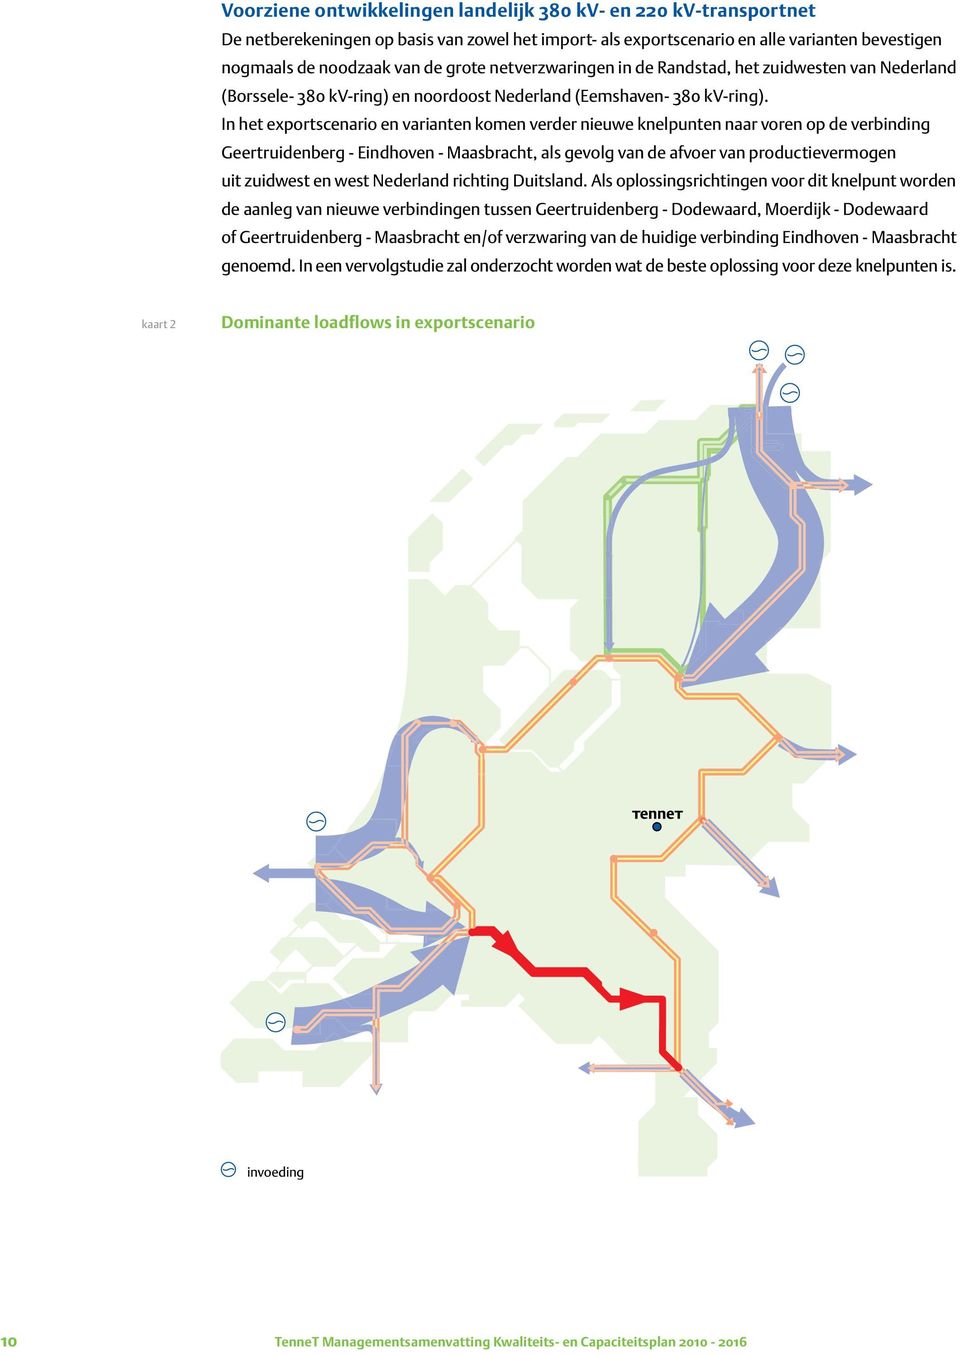 In het exportscenario en varianten komen verder nieuwe knelpunten naar voren op de verbinding Geertruidenberg - Eindhoven - Maasbracht, als gevolg van de afvoer van productievermogen uit zuidwest en